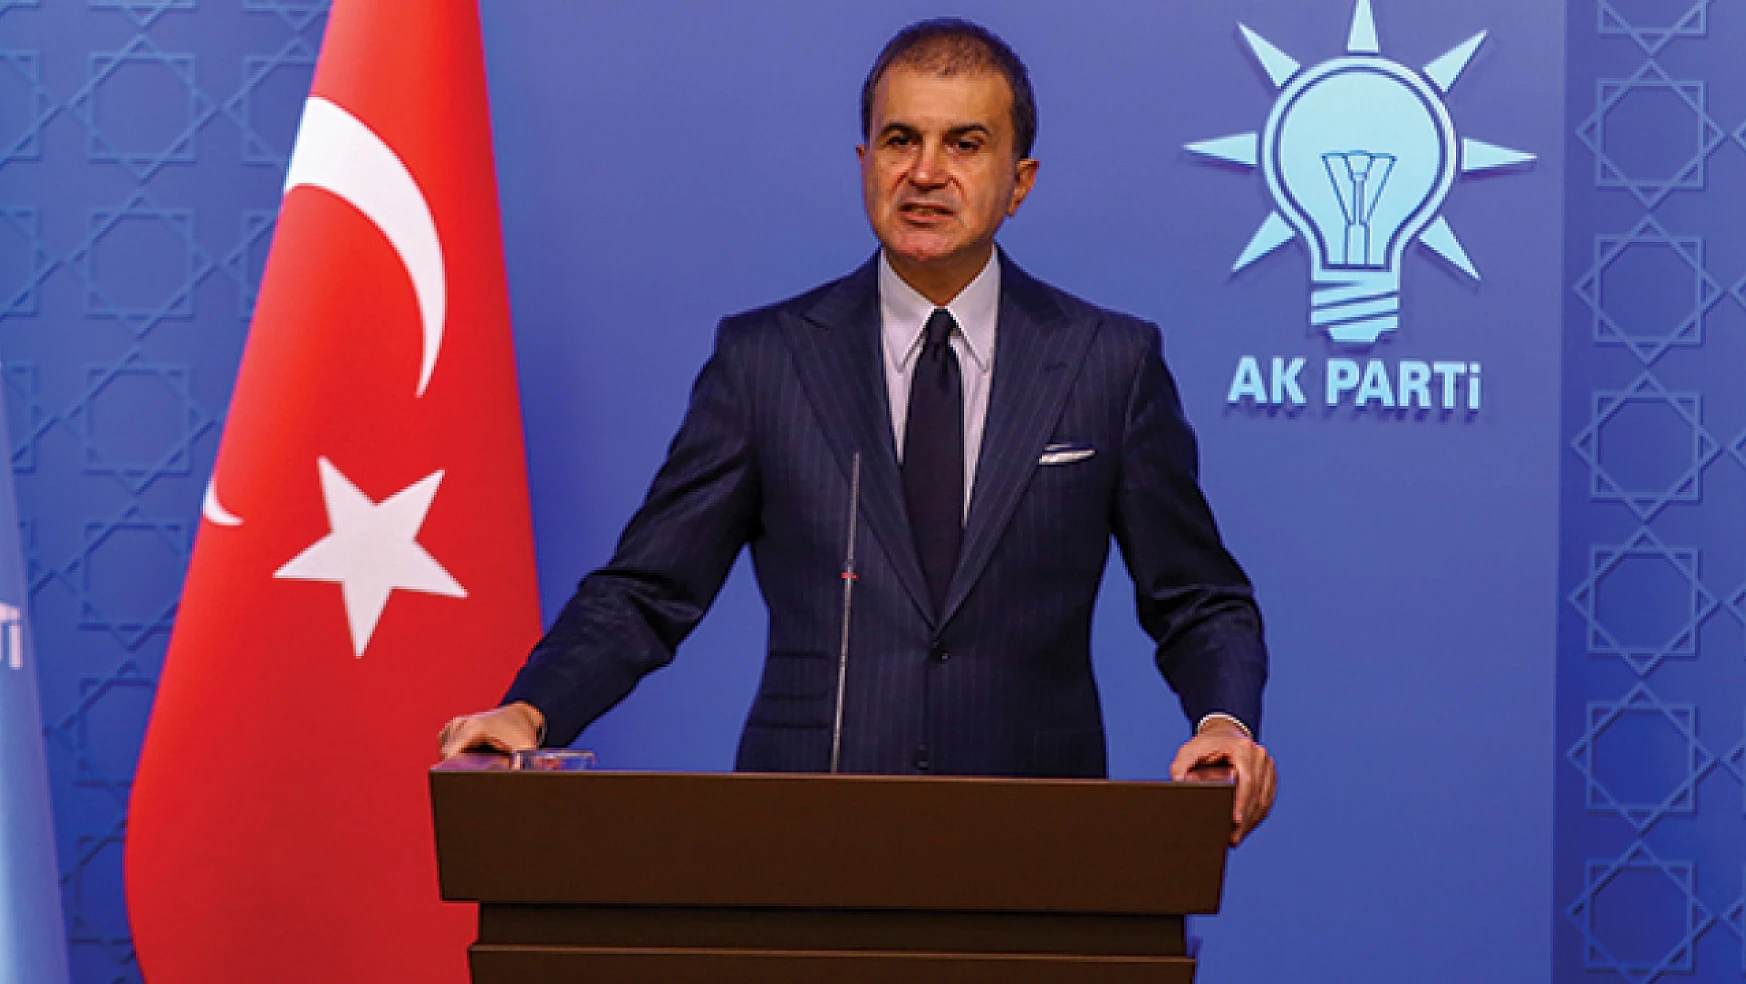 AK Parti Sözcüsü Ömer Çelik: Kılıçdaroğlu haddini aştı